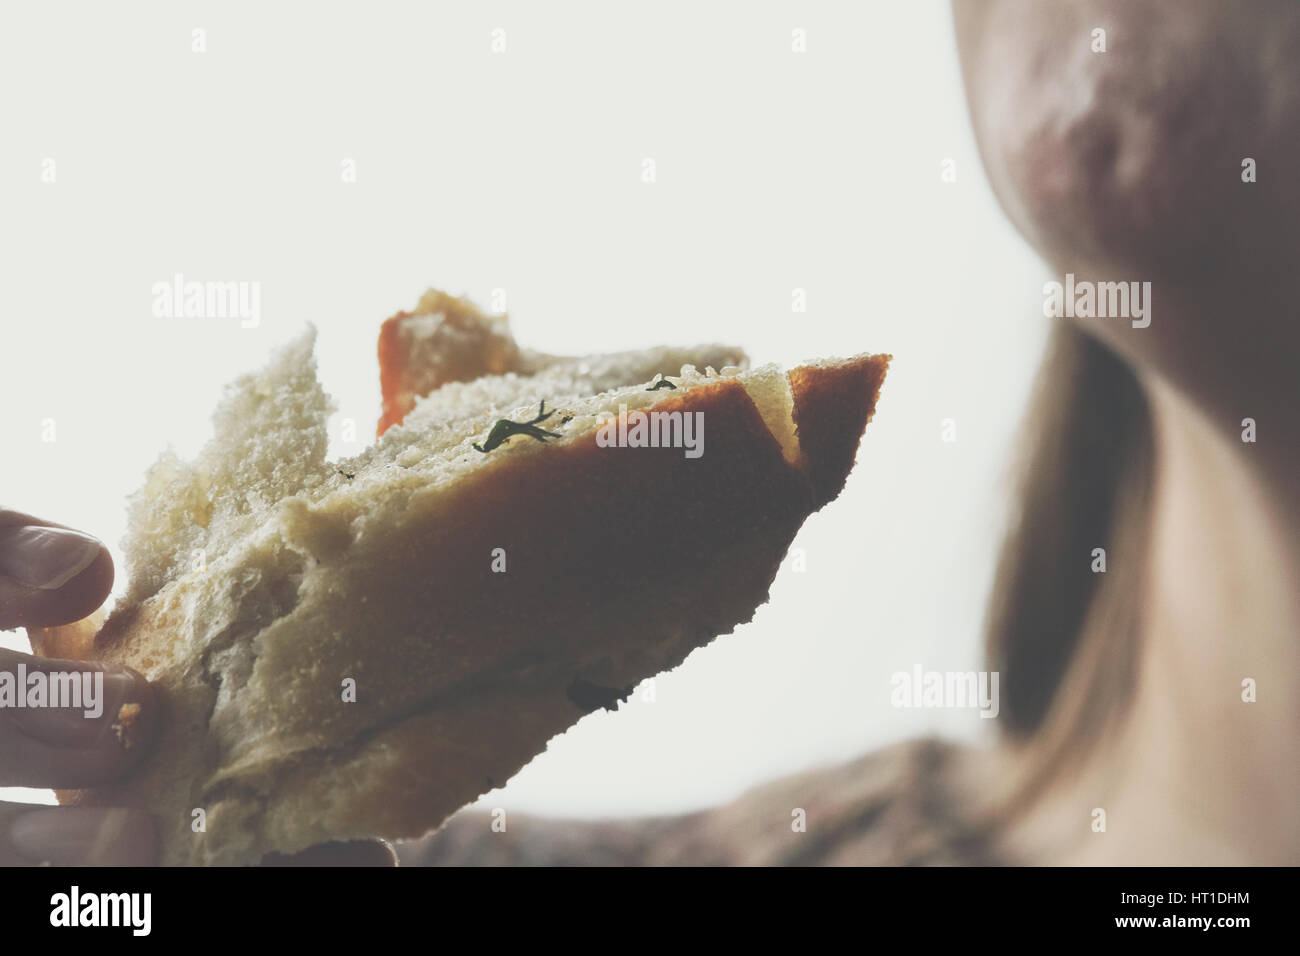 Primo piano della donna mangiare aglio pane Foto Stock